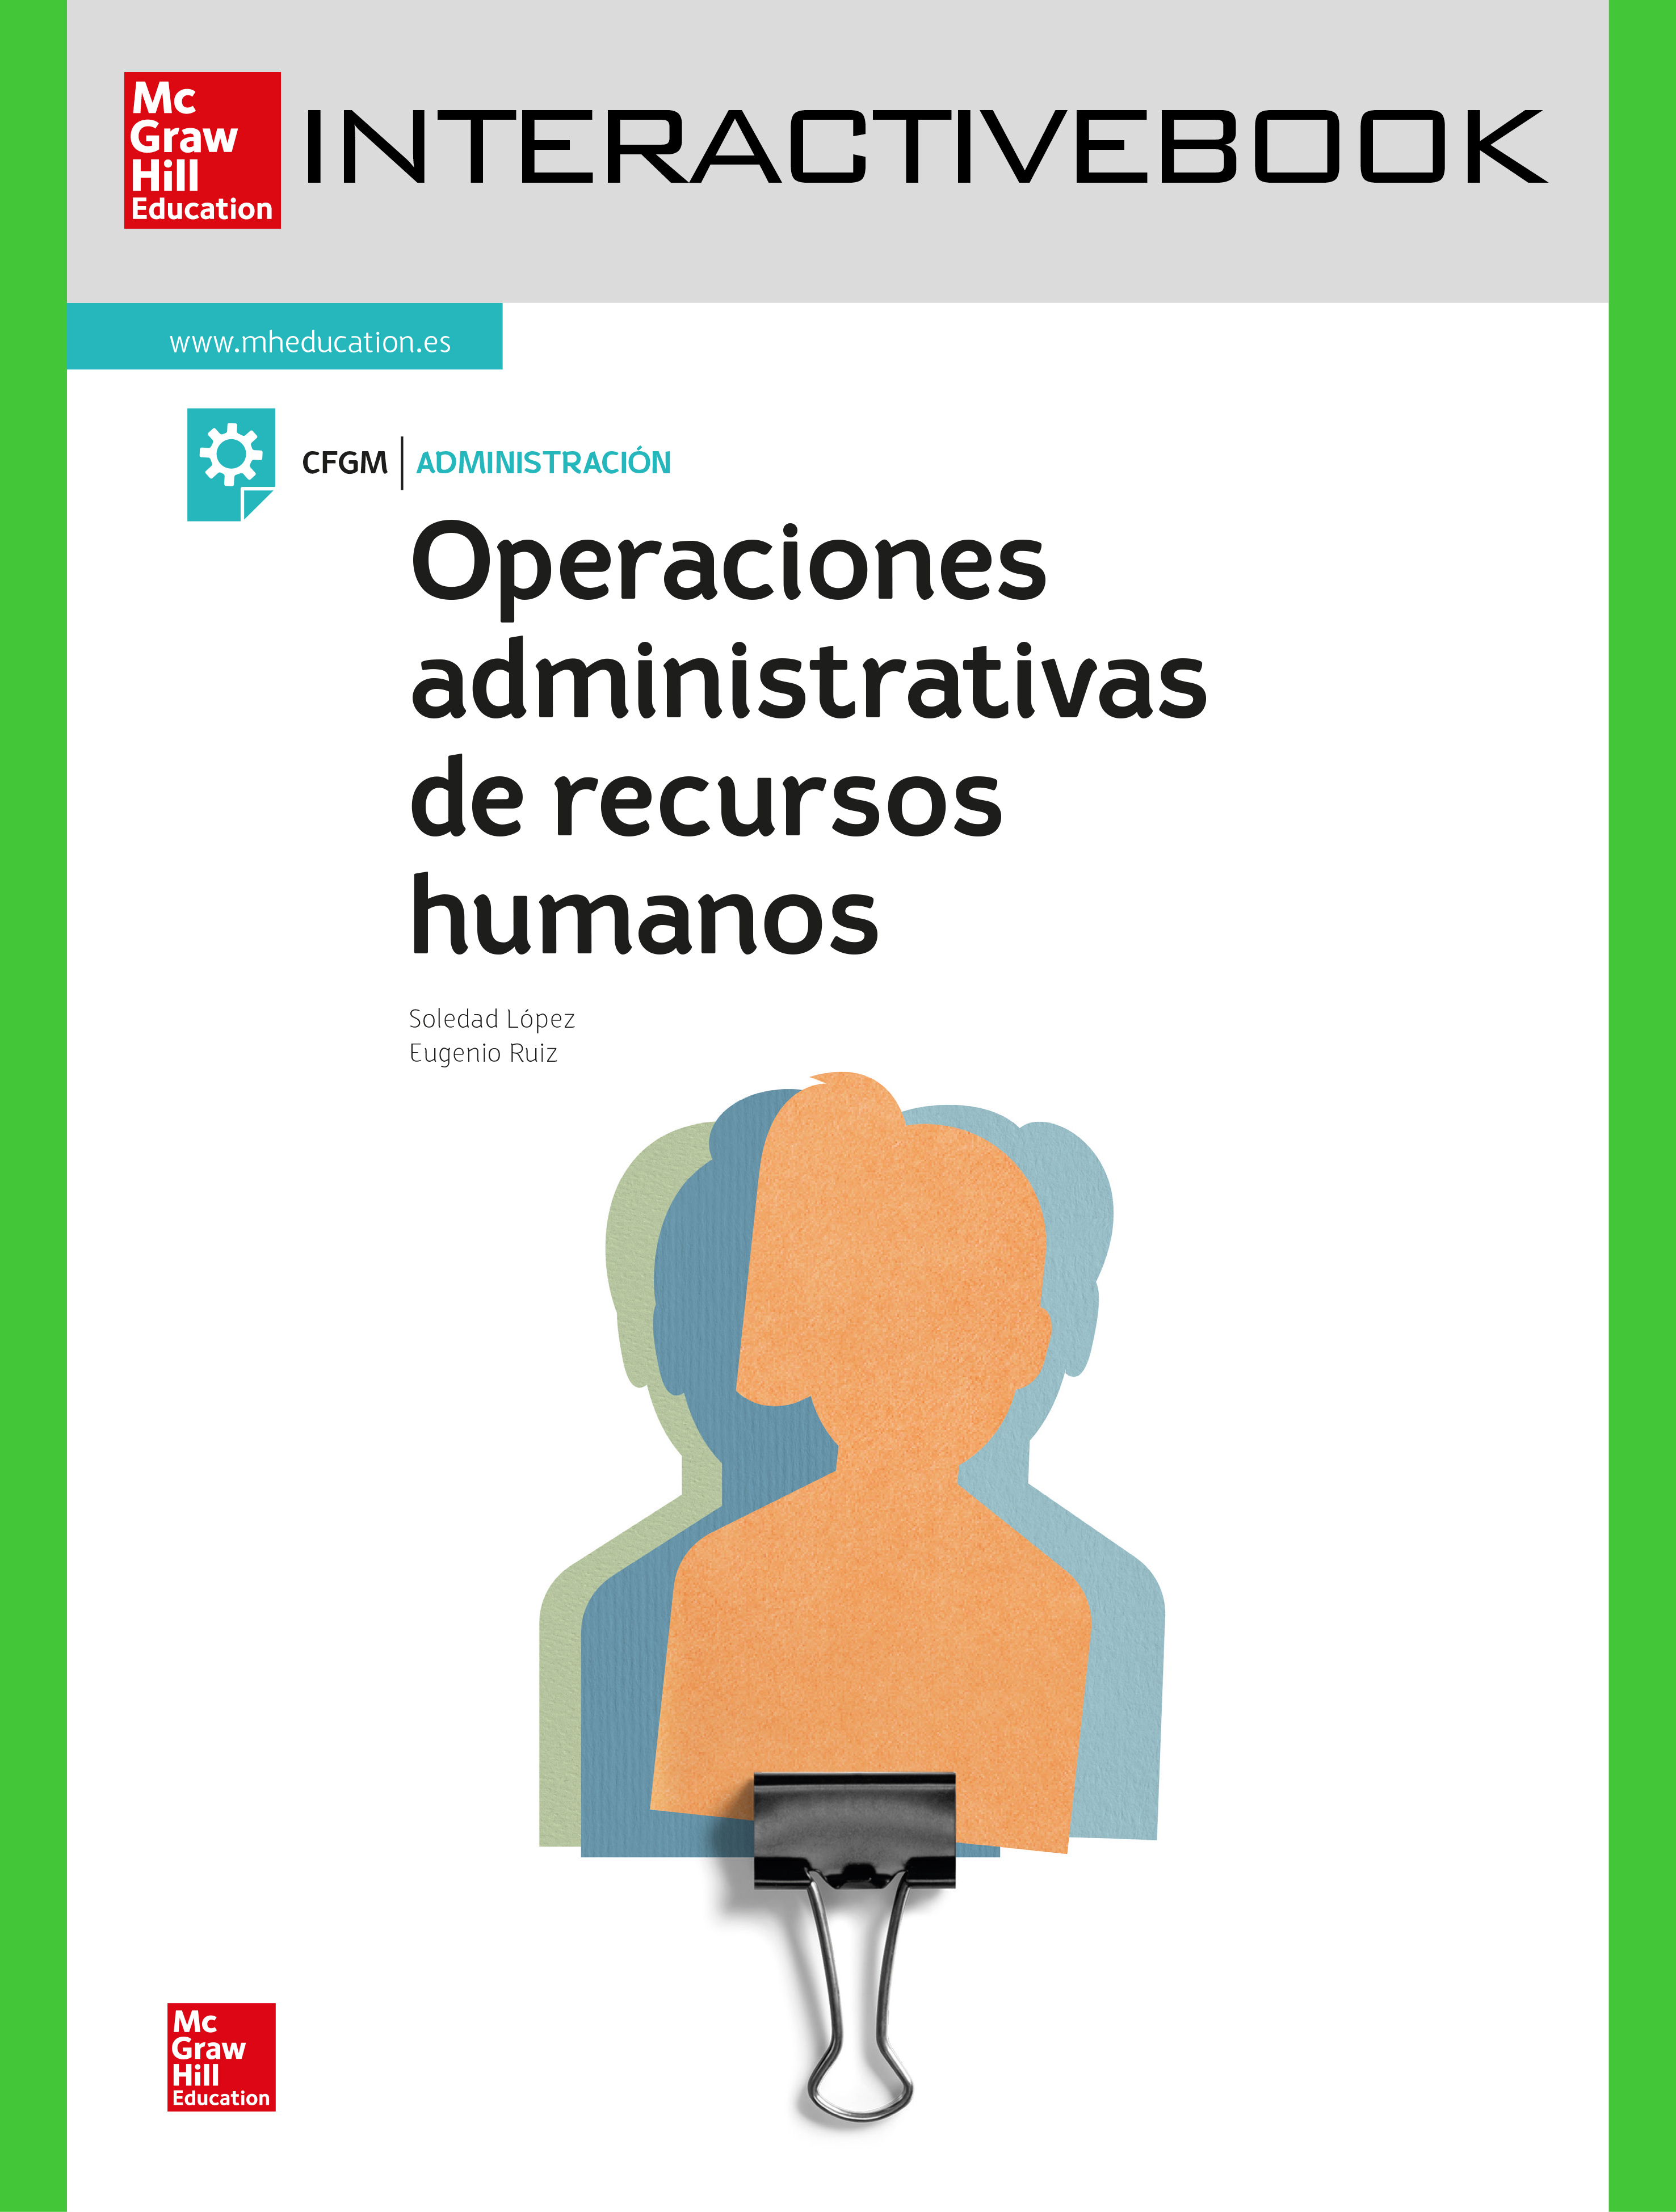 INTERACTIVEBOOK - Operaciones administrativas de recursos humanos